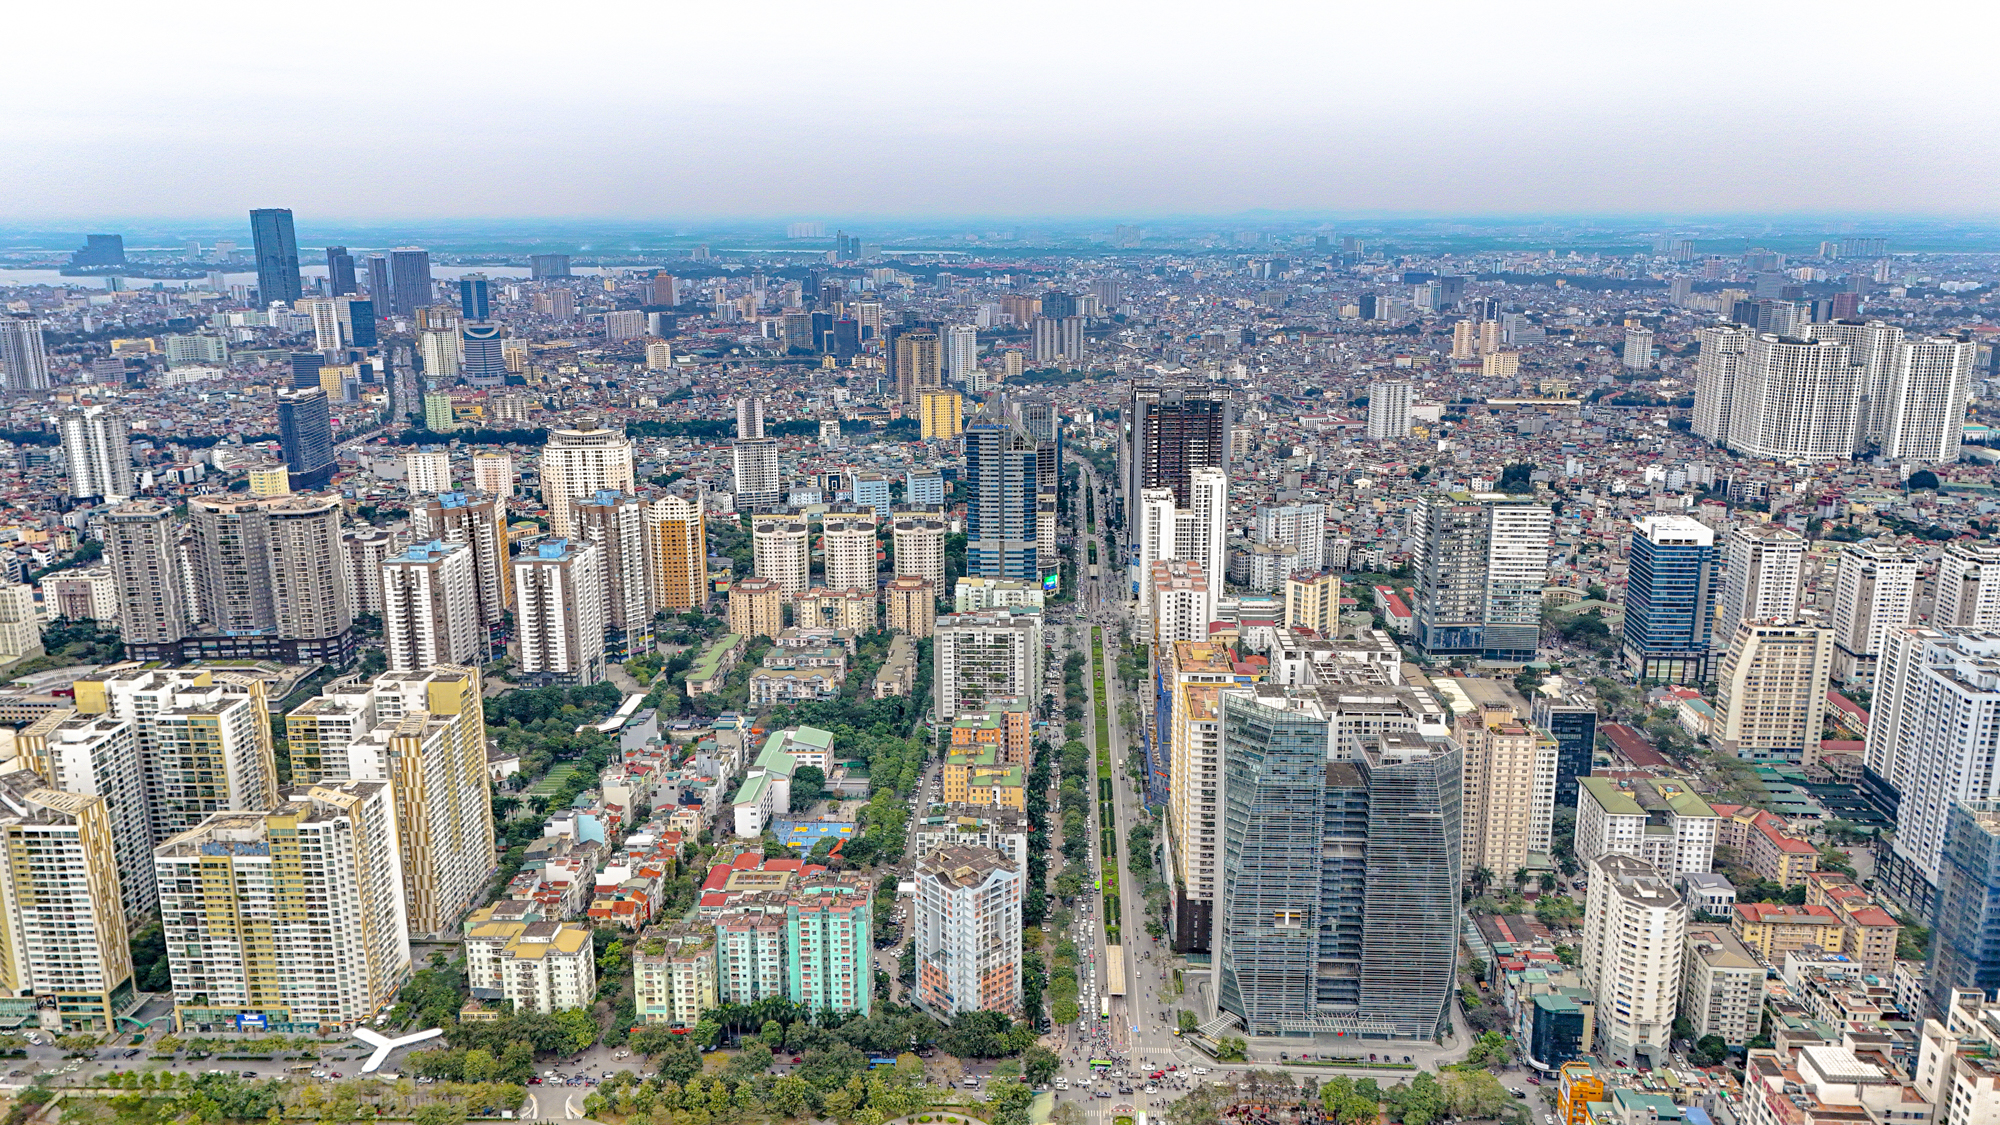 Cảnh “rừng căn hộ” mọc san sát tại thành phố có nhiều nhà cao tầng nhất Việt Nam- Ảnh 1.